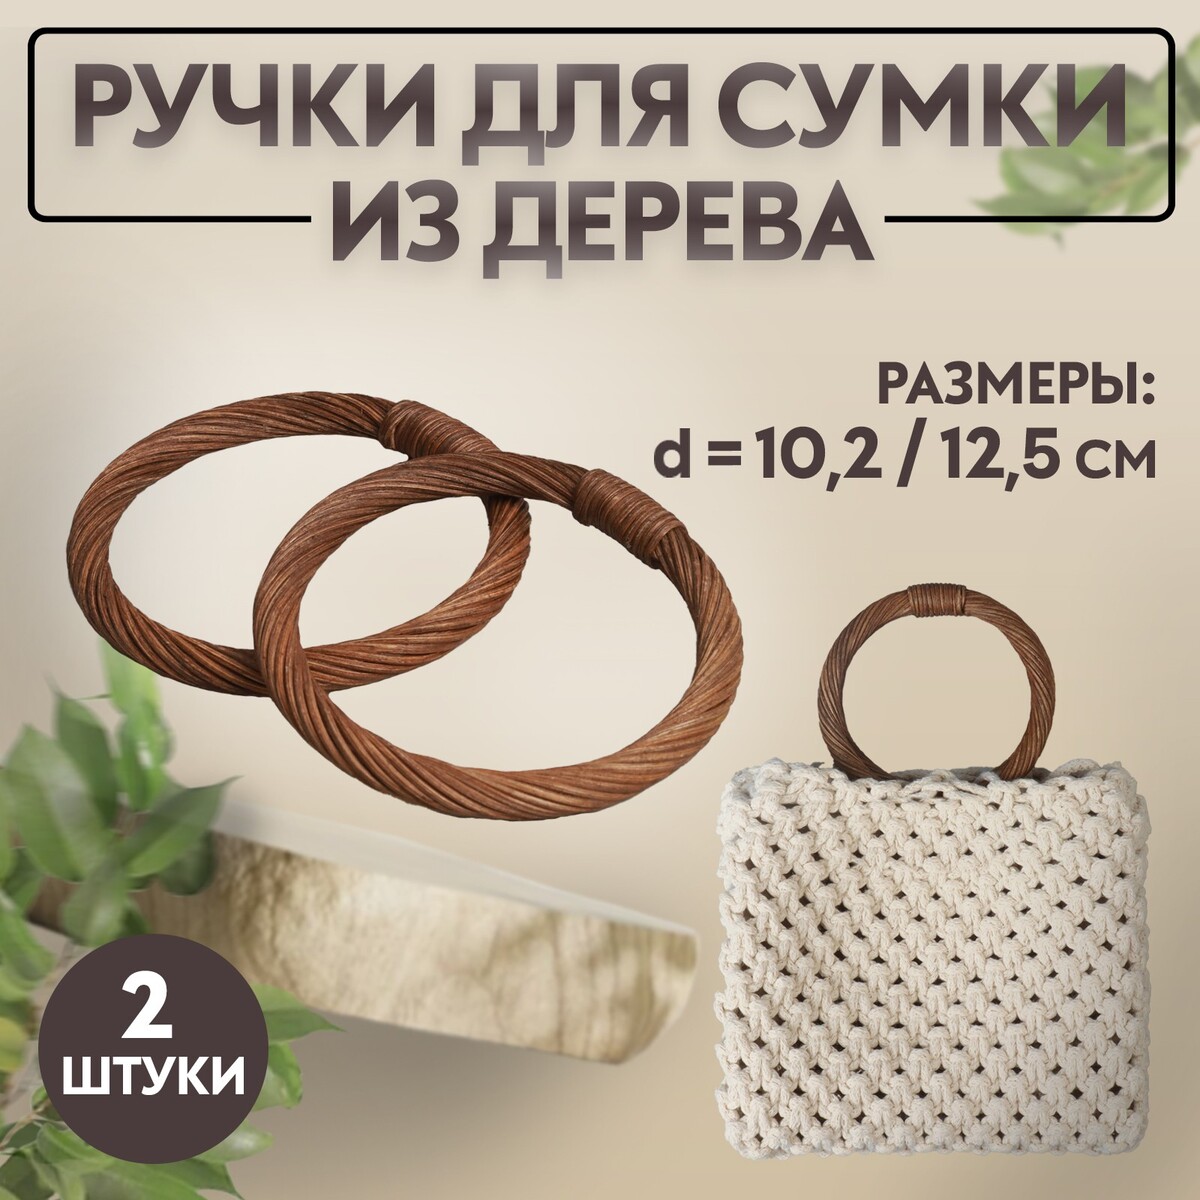 Ручки для сумки деревянные, плетеные, d = 10,2 / 12,5 см, 2 шт, цвет коричневый ручки для сумки деревянные 12 × 8 5 см 2 шт темно коричневый